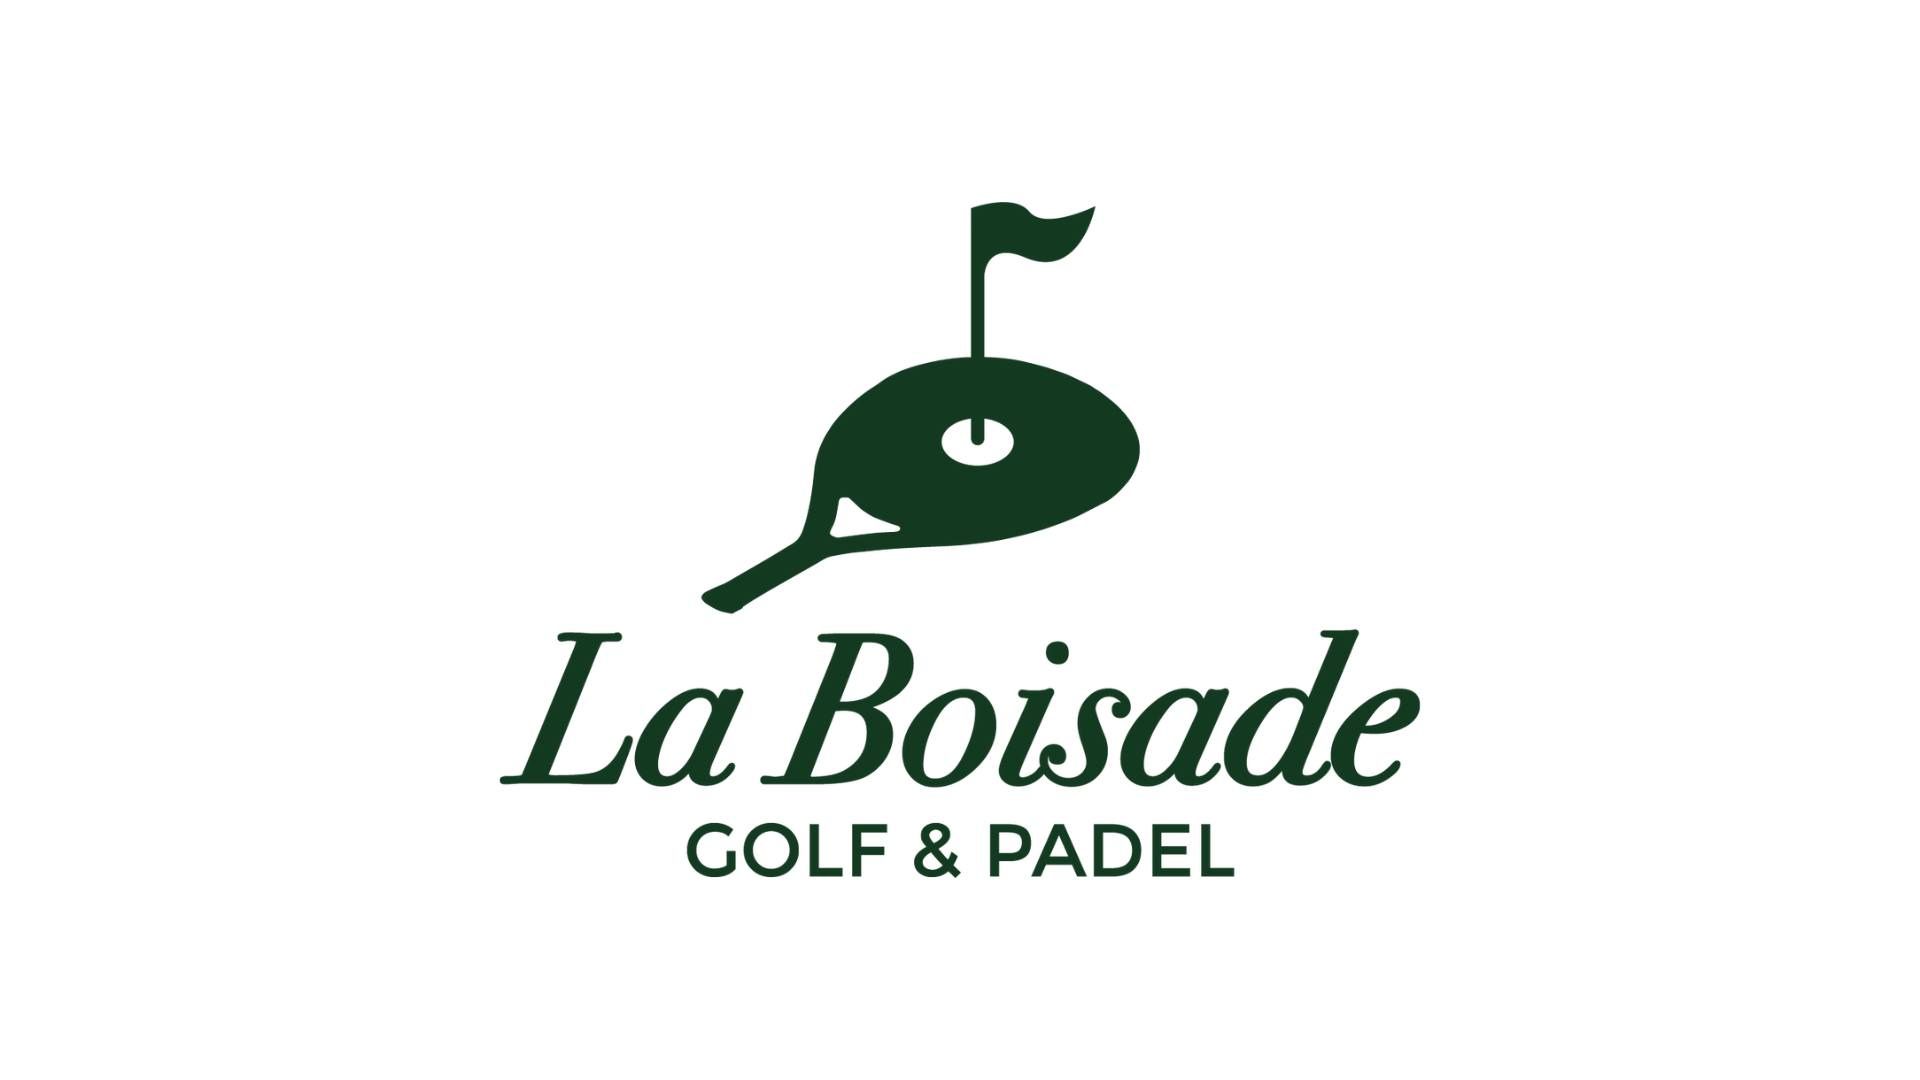 Tapahtuma, jossa yhdistyvät golf ja padel Toulousessa Padel Klubi!